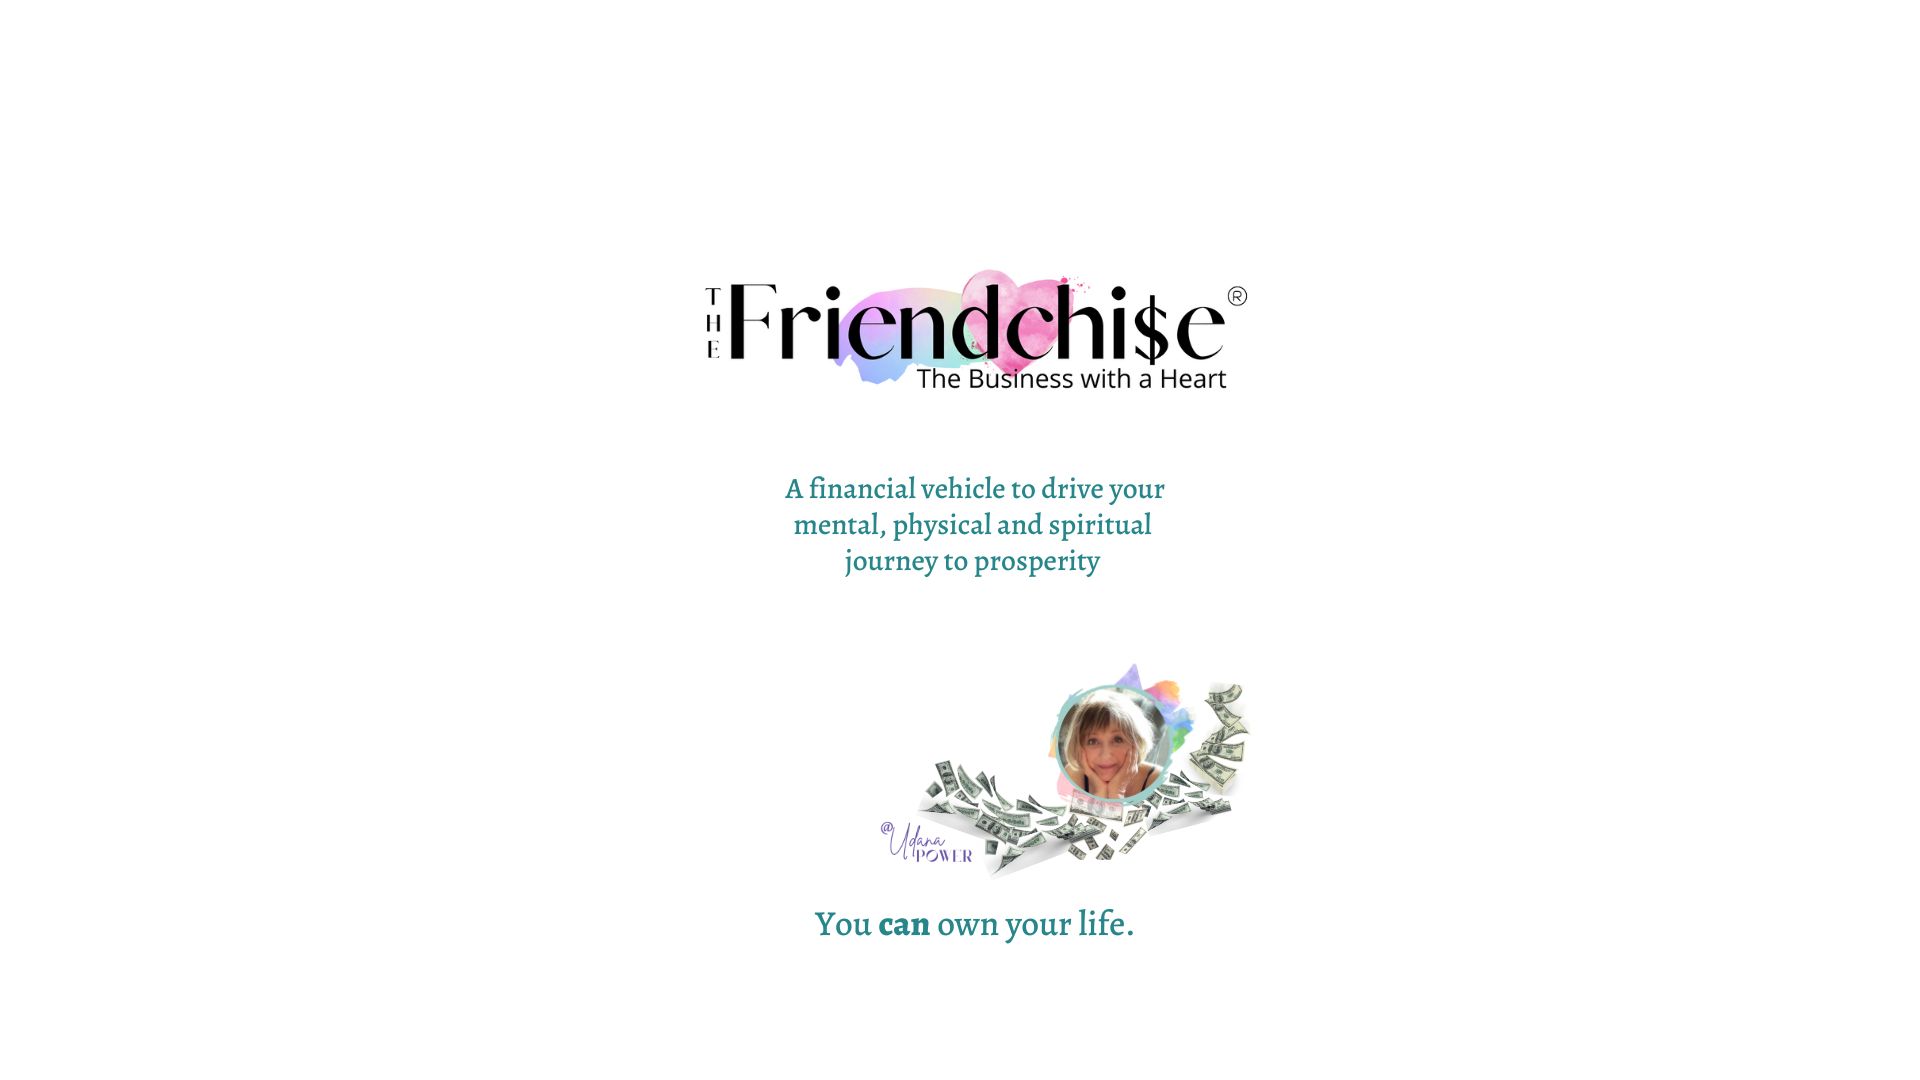 Friendchise - Biz with a Heart